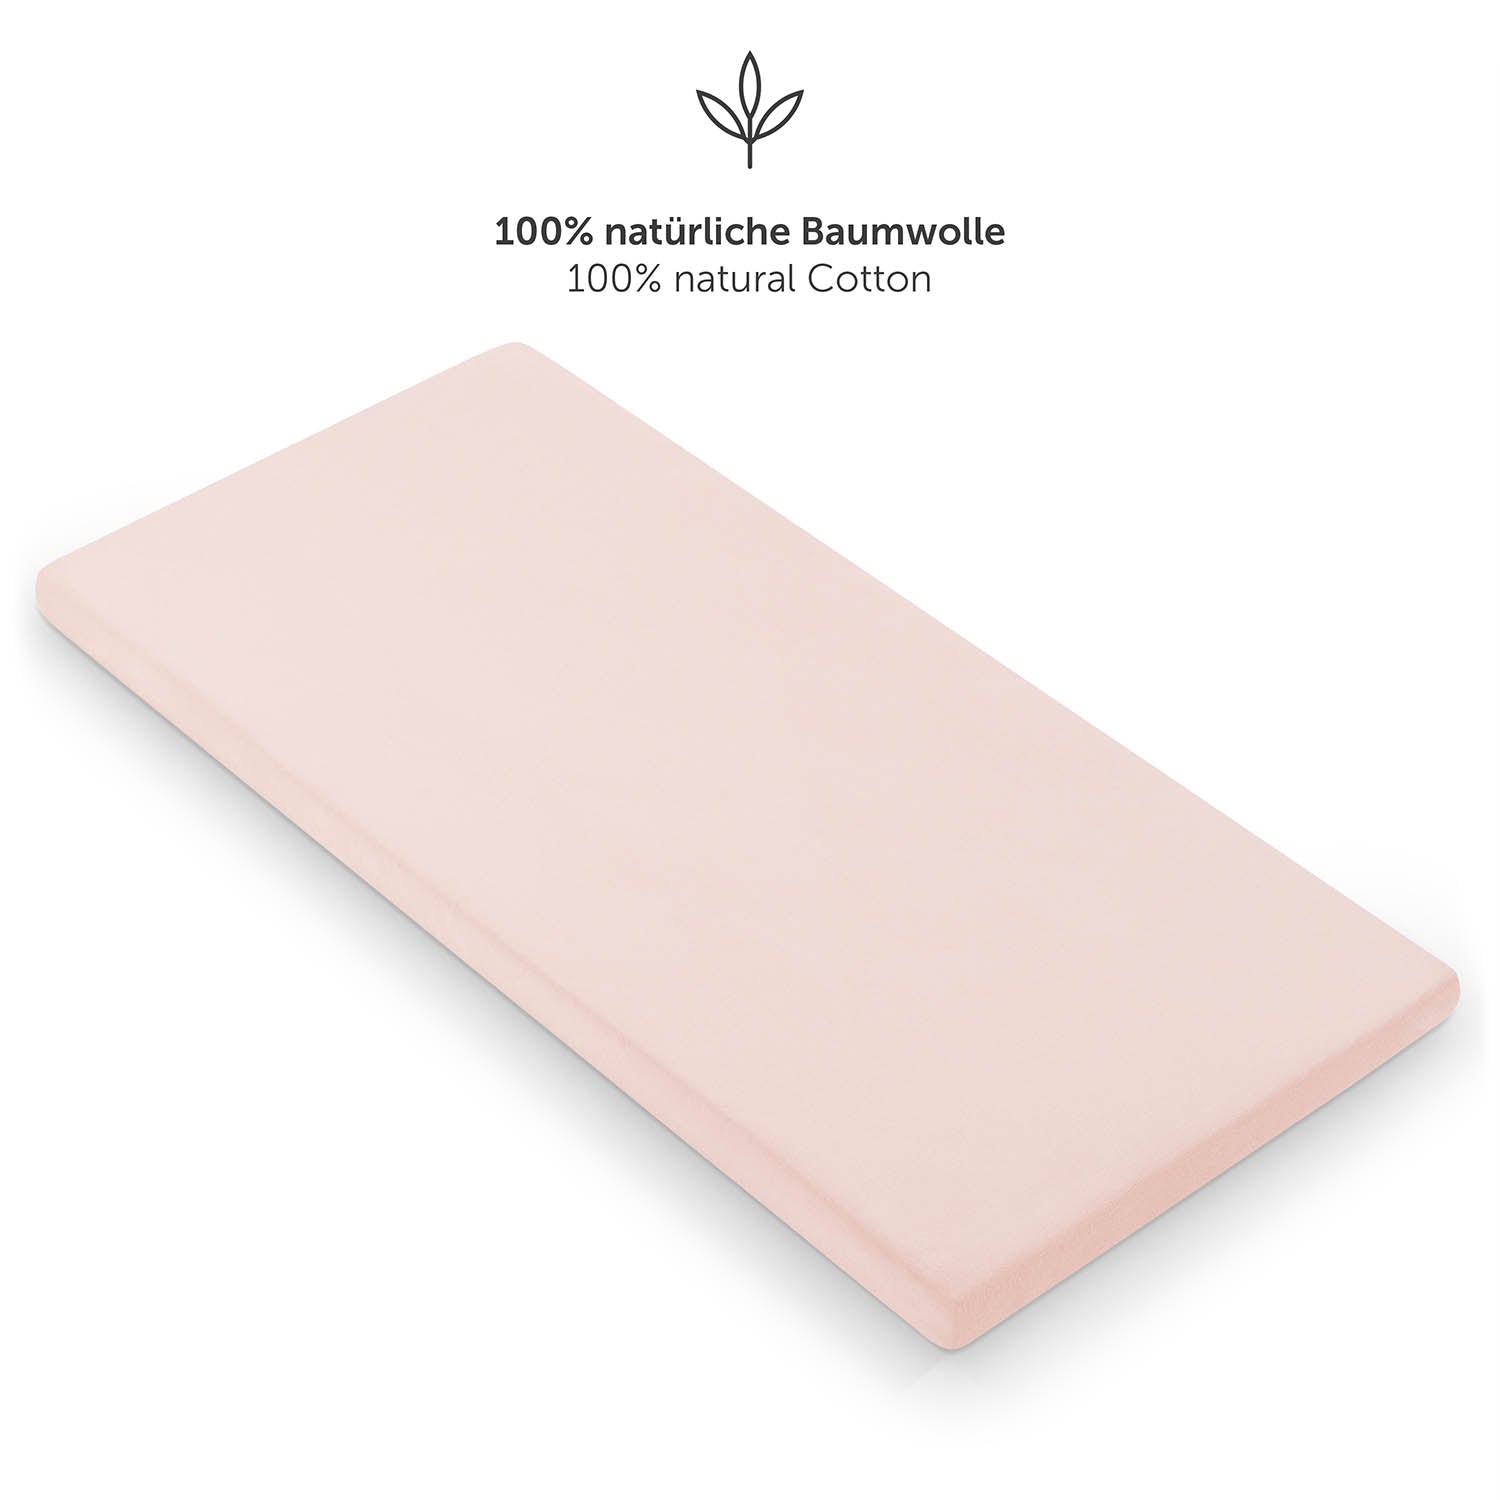 rosefarbenen Spannbettlaken aus 100% natürlicher Baumwolle für ein Kinderbett.